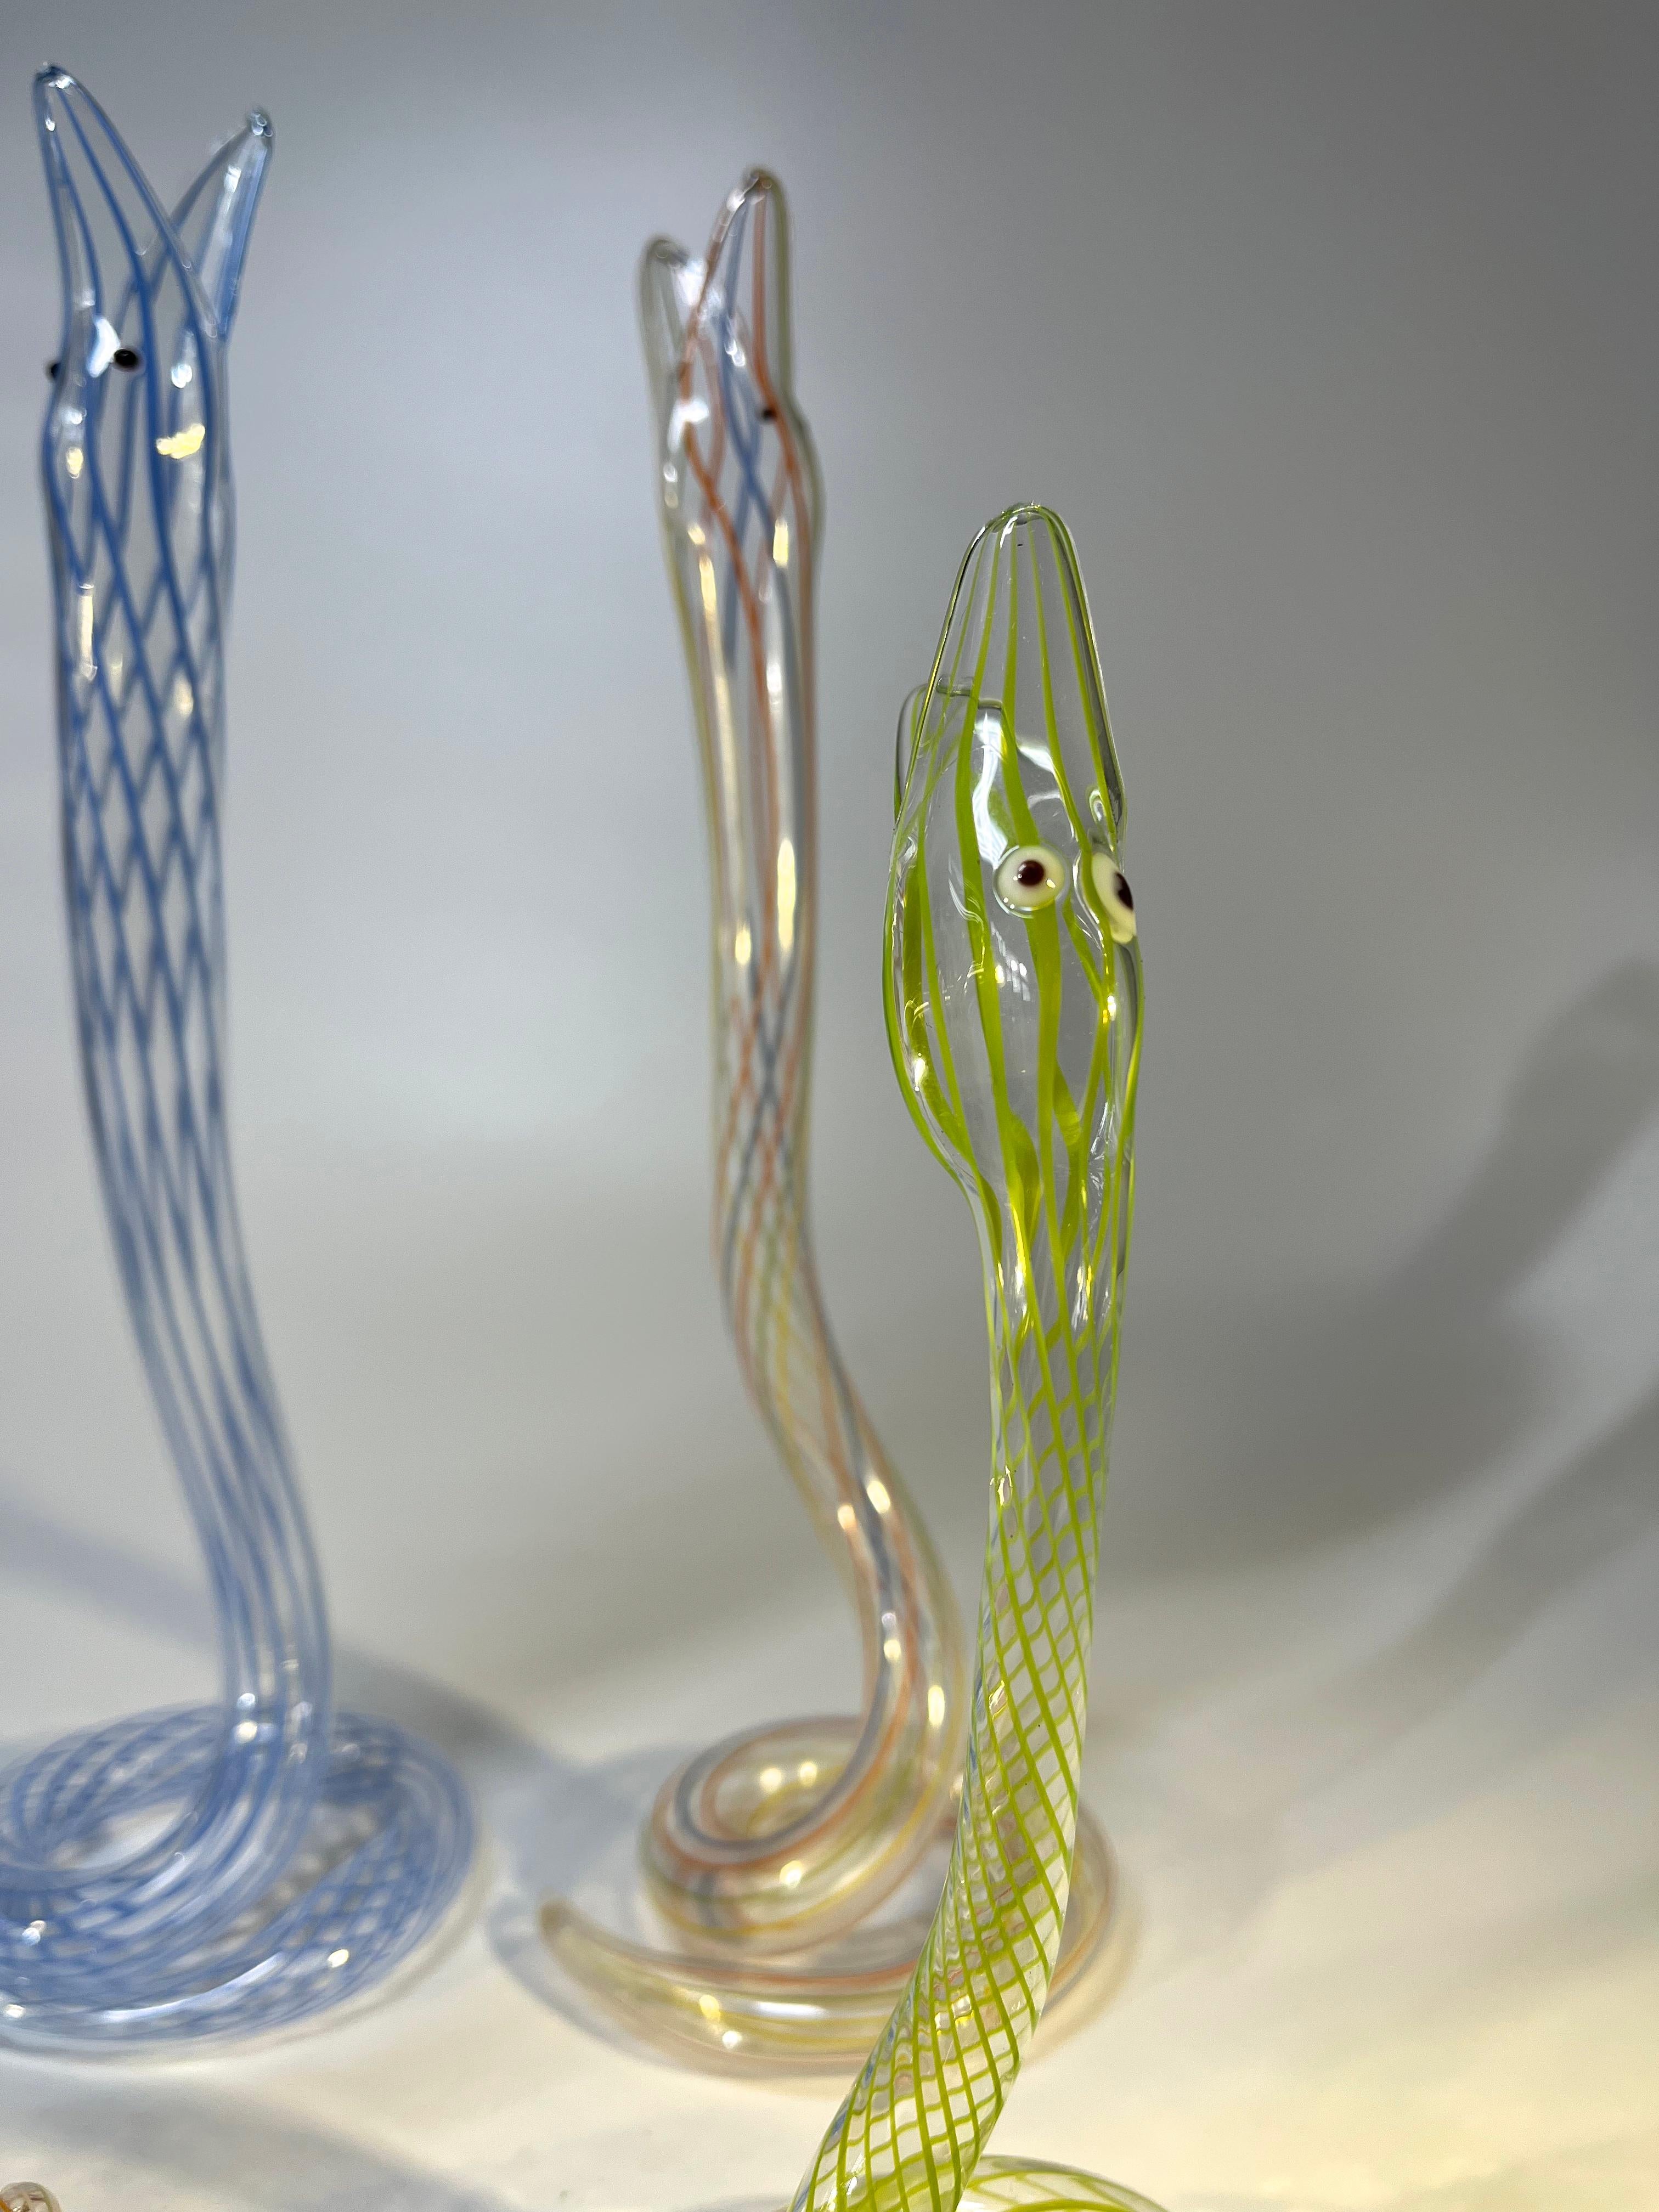 Slither of Whimsical Bimini Glass Lampwork Art Deco Snake Vases, c1920-1930 For Sale 1